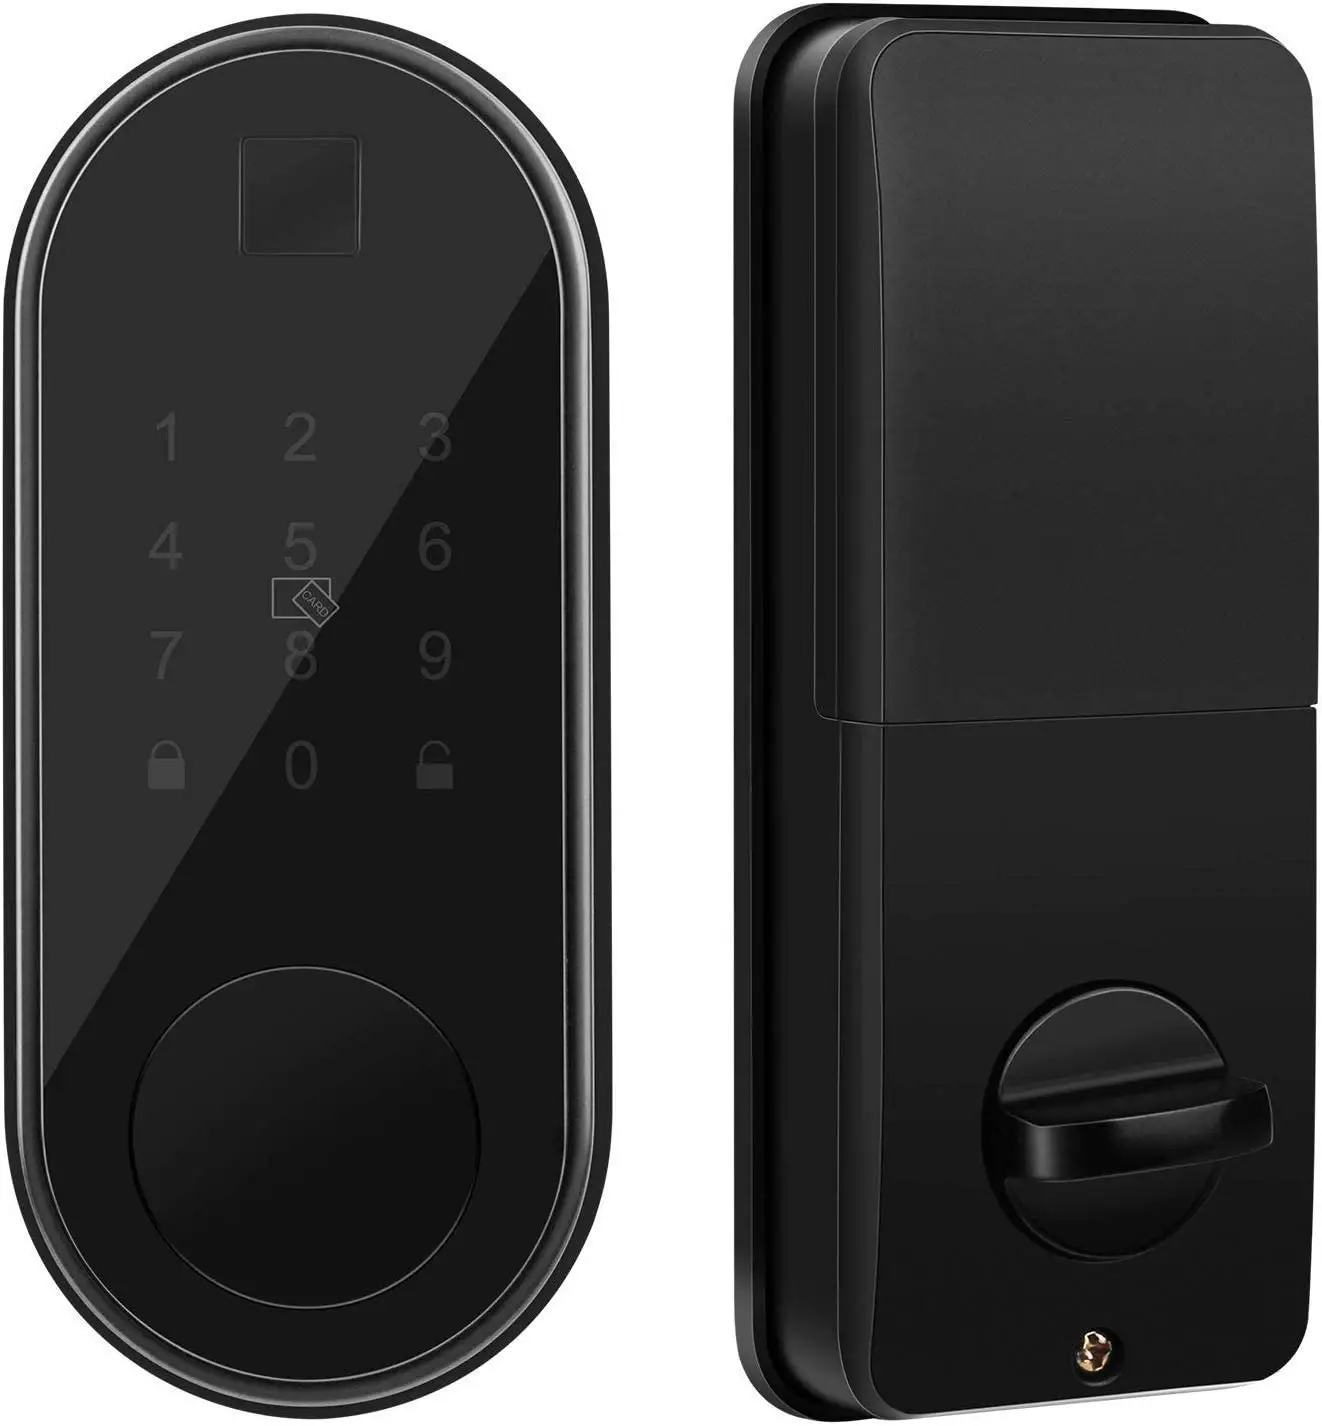 Smartphone Door Locks